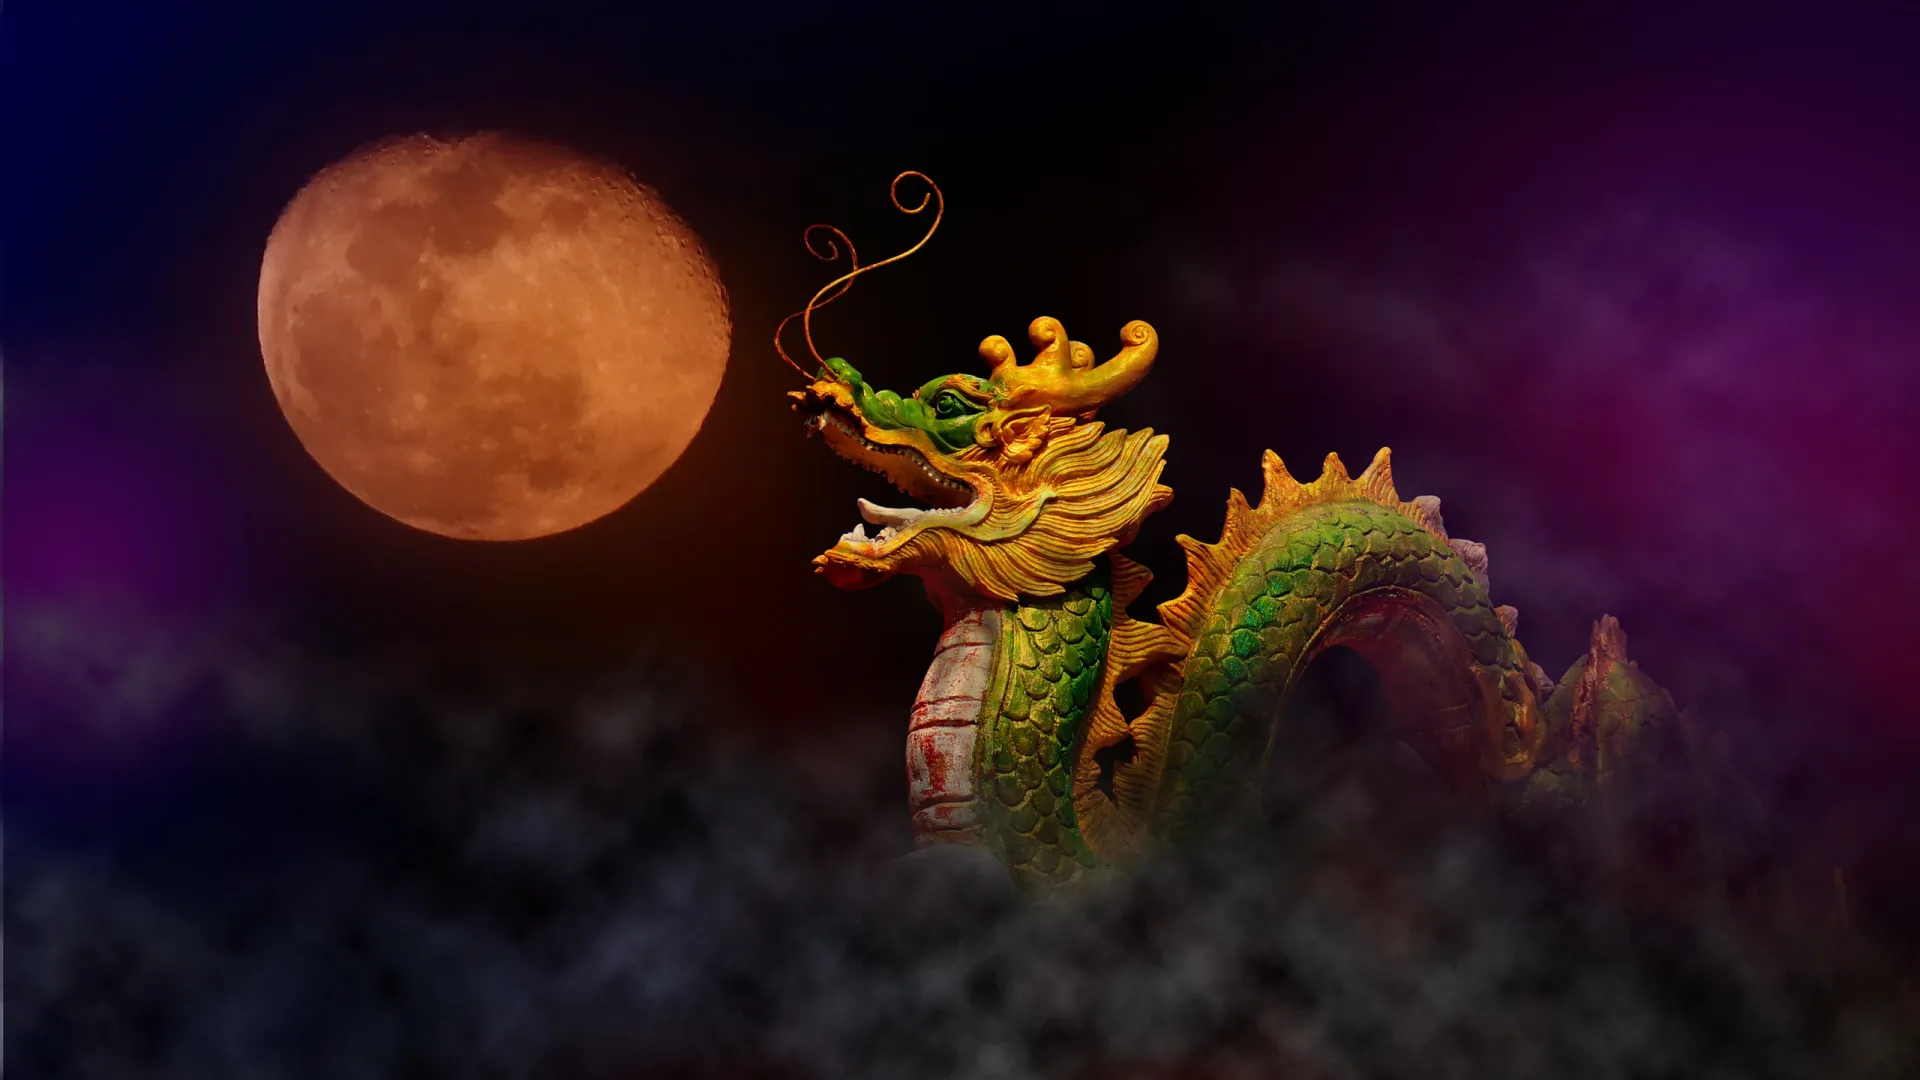 Дракон следит за всем, что происходит в мире. Фото: Watercolorful / Shutterstock / Fotodom